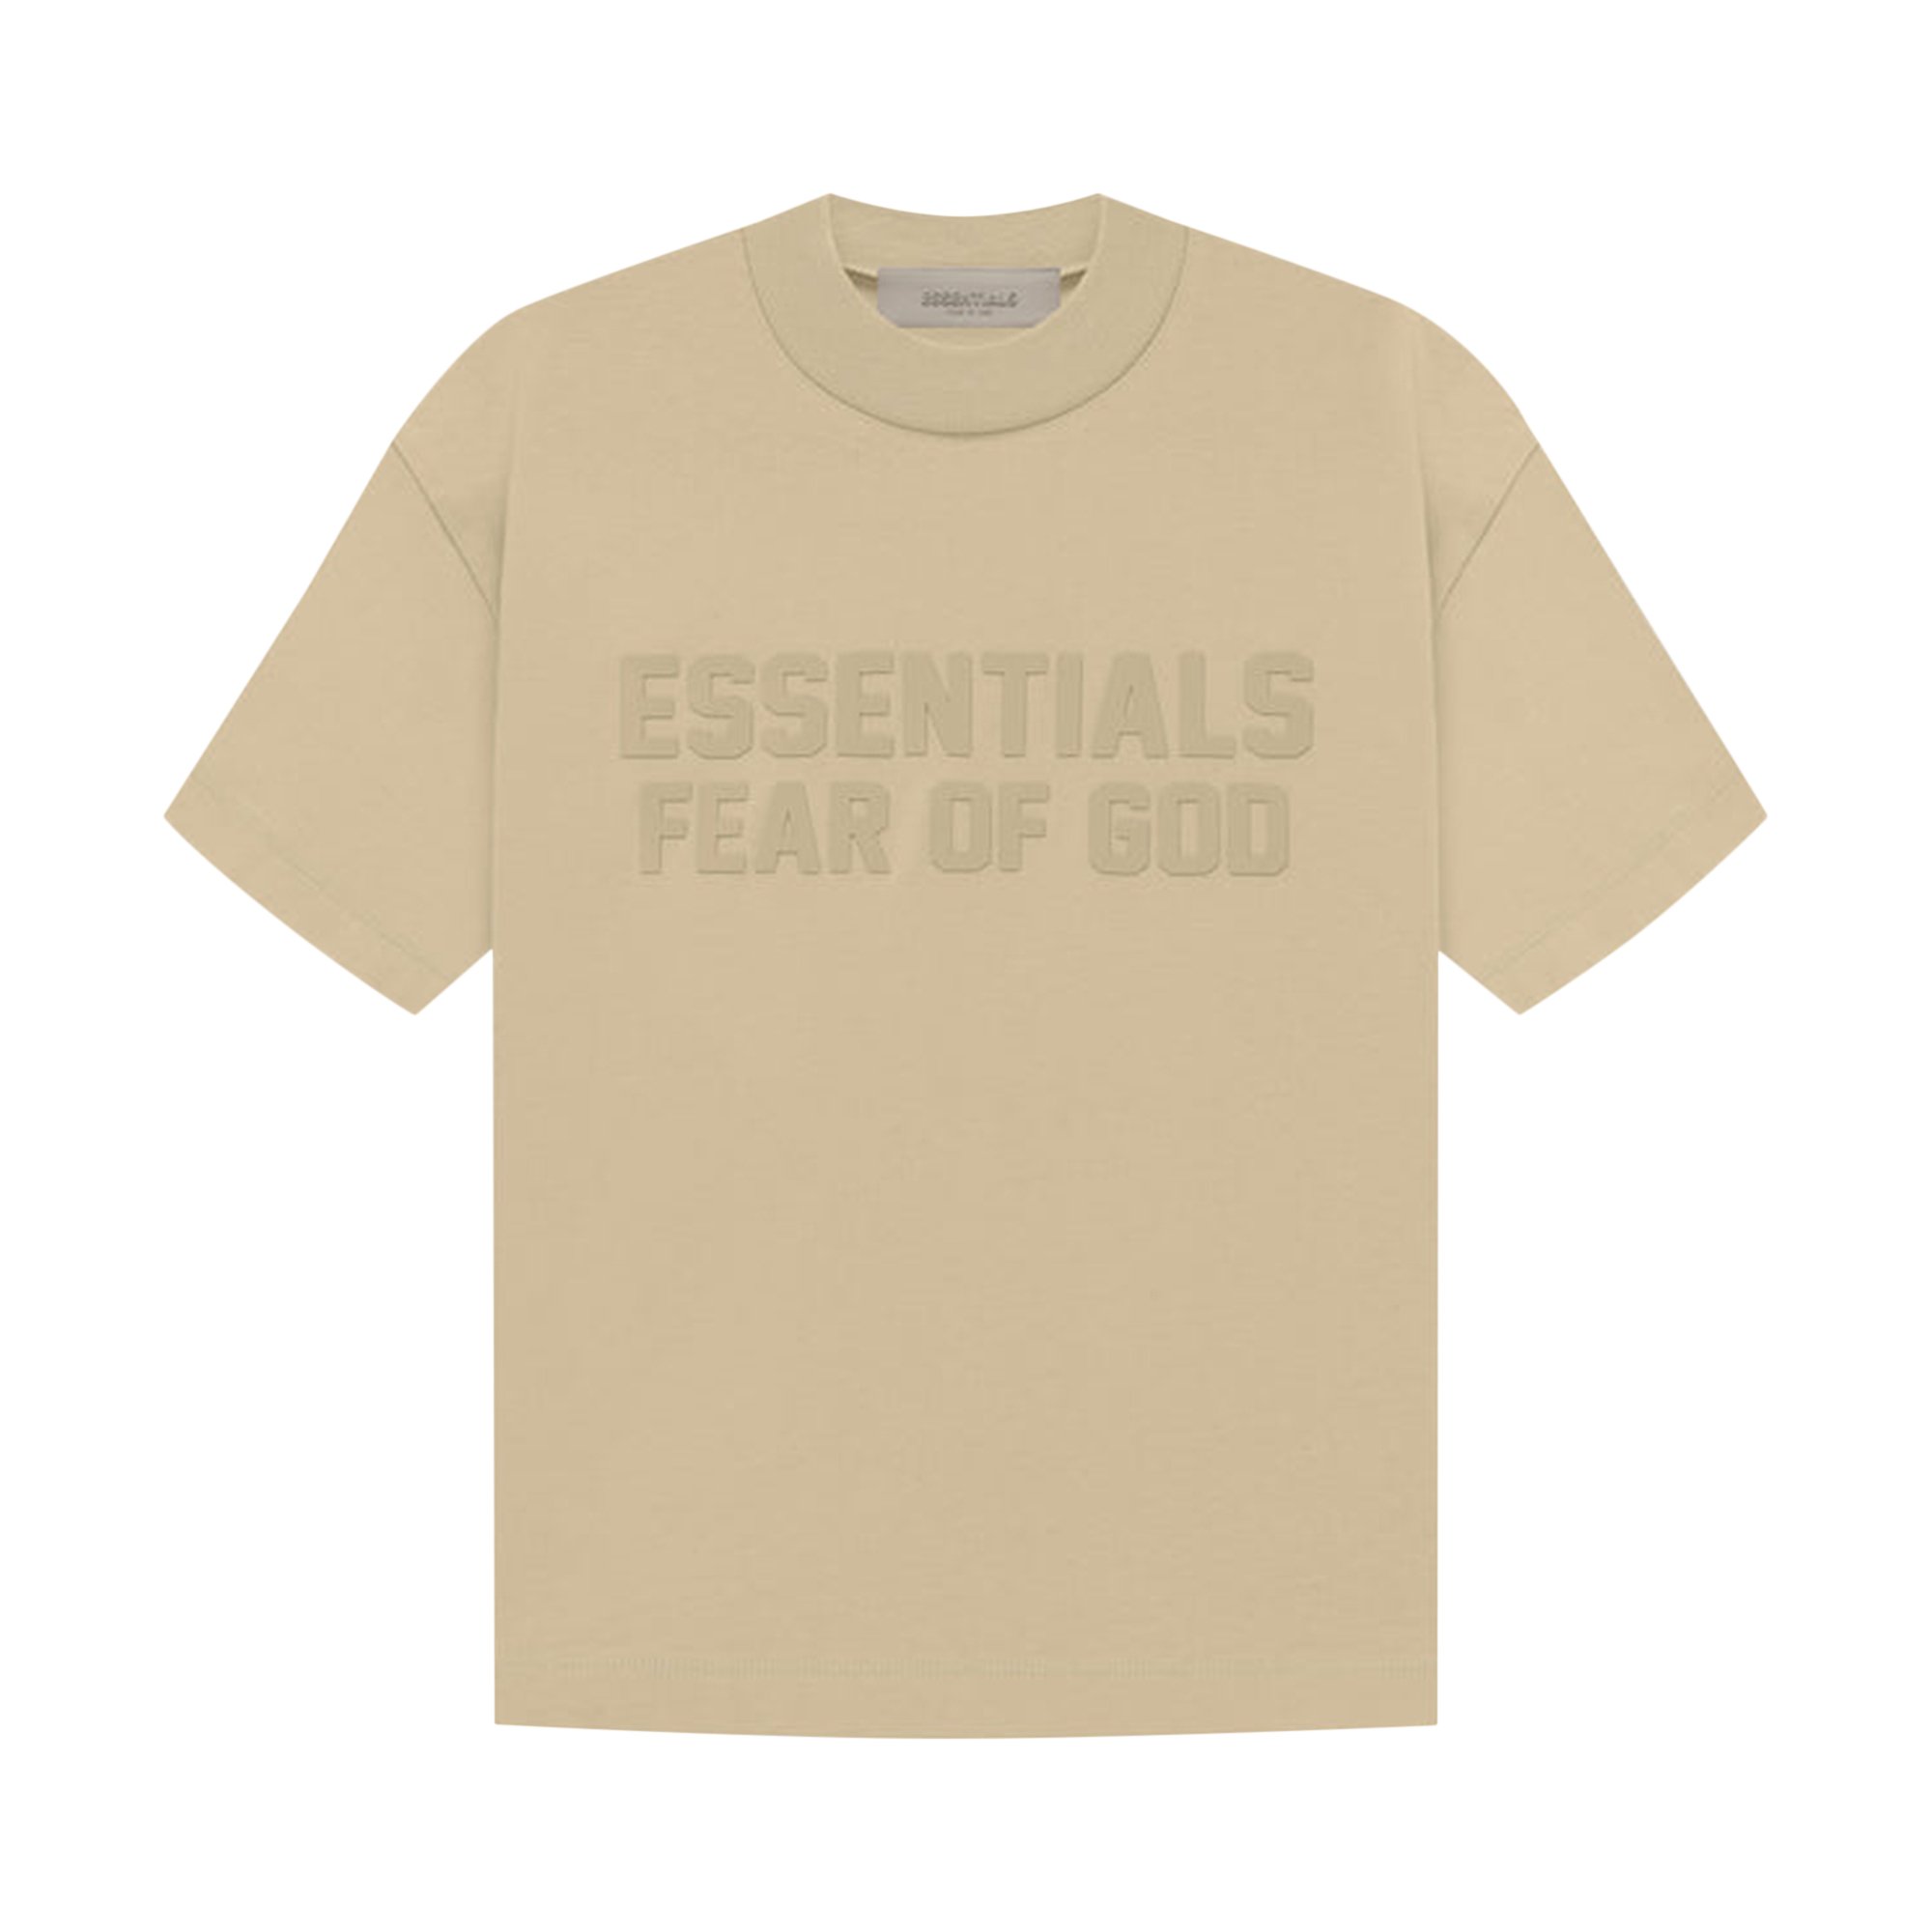 Детская футболка с короткими рукавами Fear of God Essentials, цвет Песок